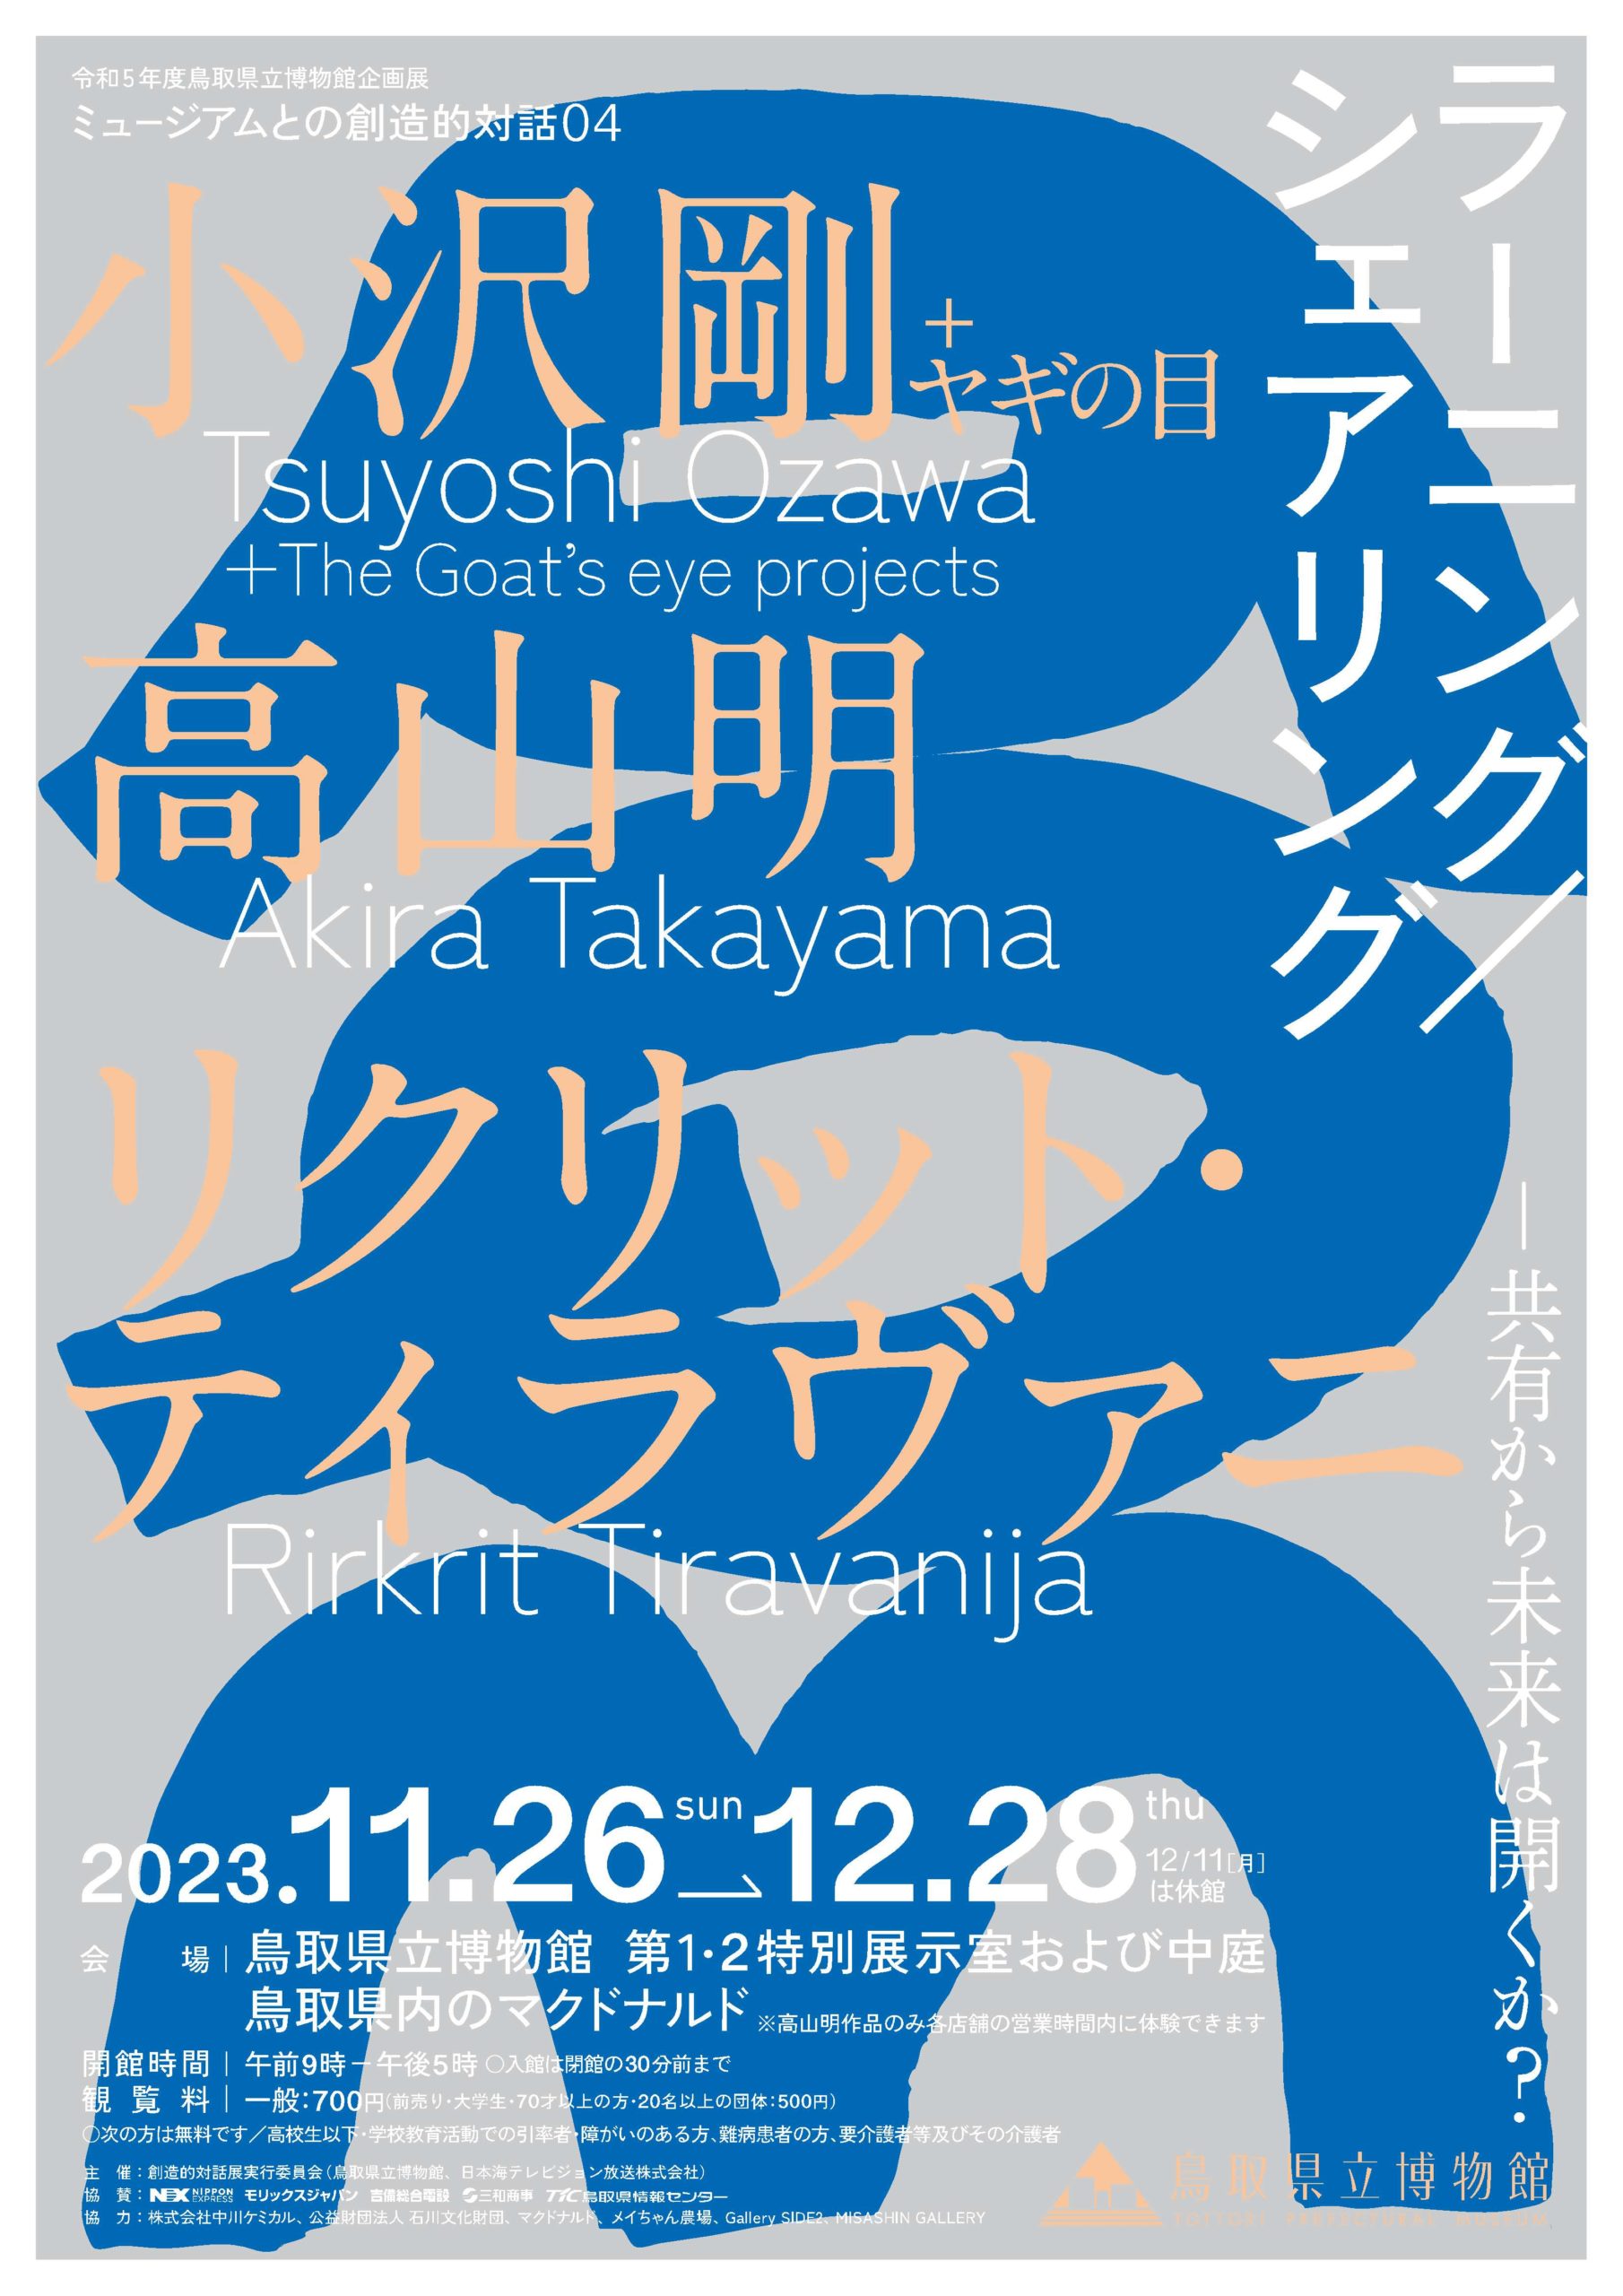 岡山芸術交流2022のアーティスティックディレクター「リクリット・ティラヴァーニャ」参加の展覧会が鳥取県立博物館で開催されます。